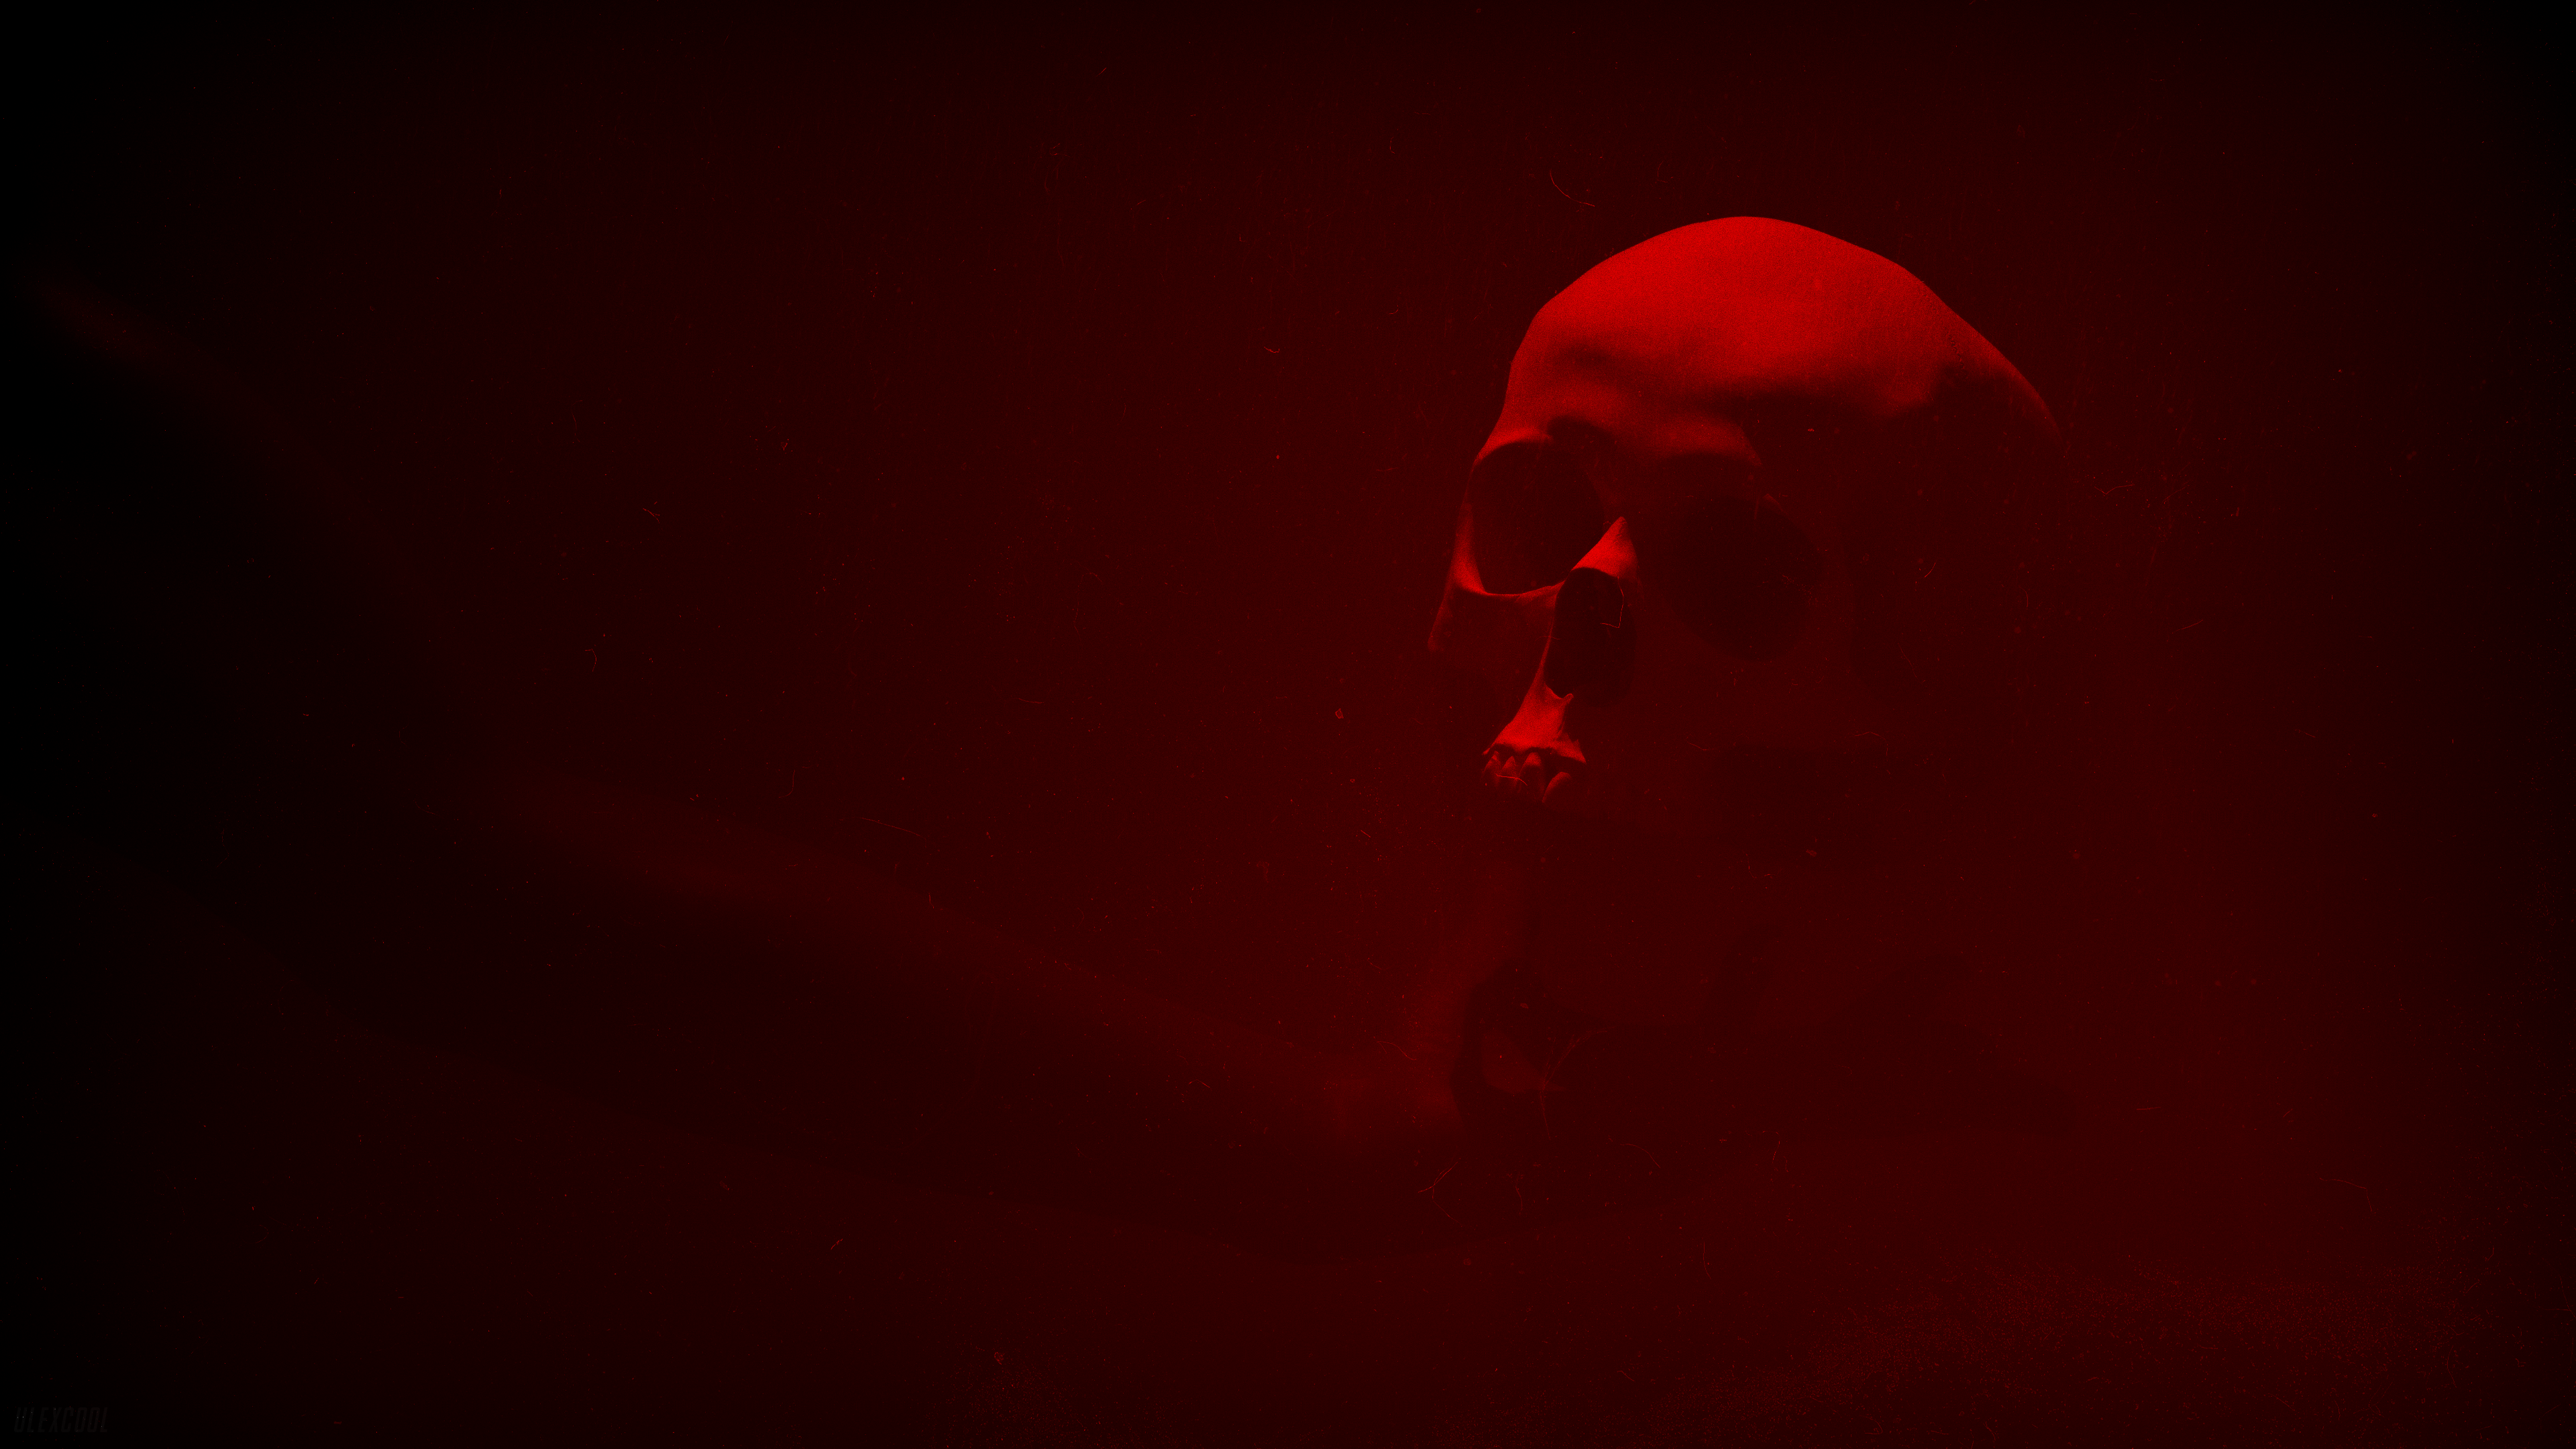 Red Mist Skull Mistery Red Light Hands 3840x2160